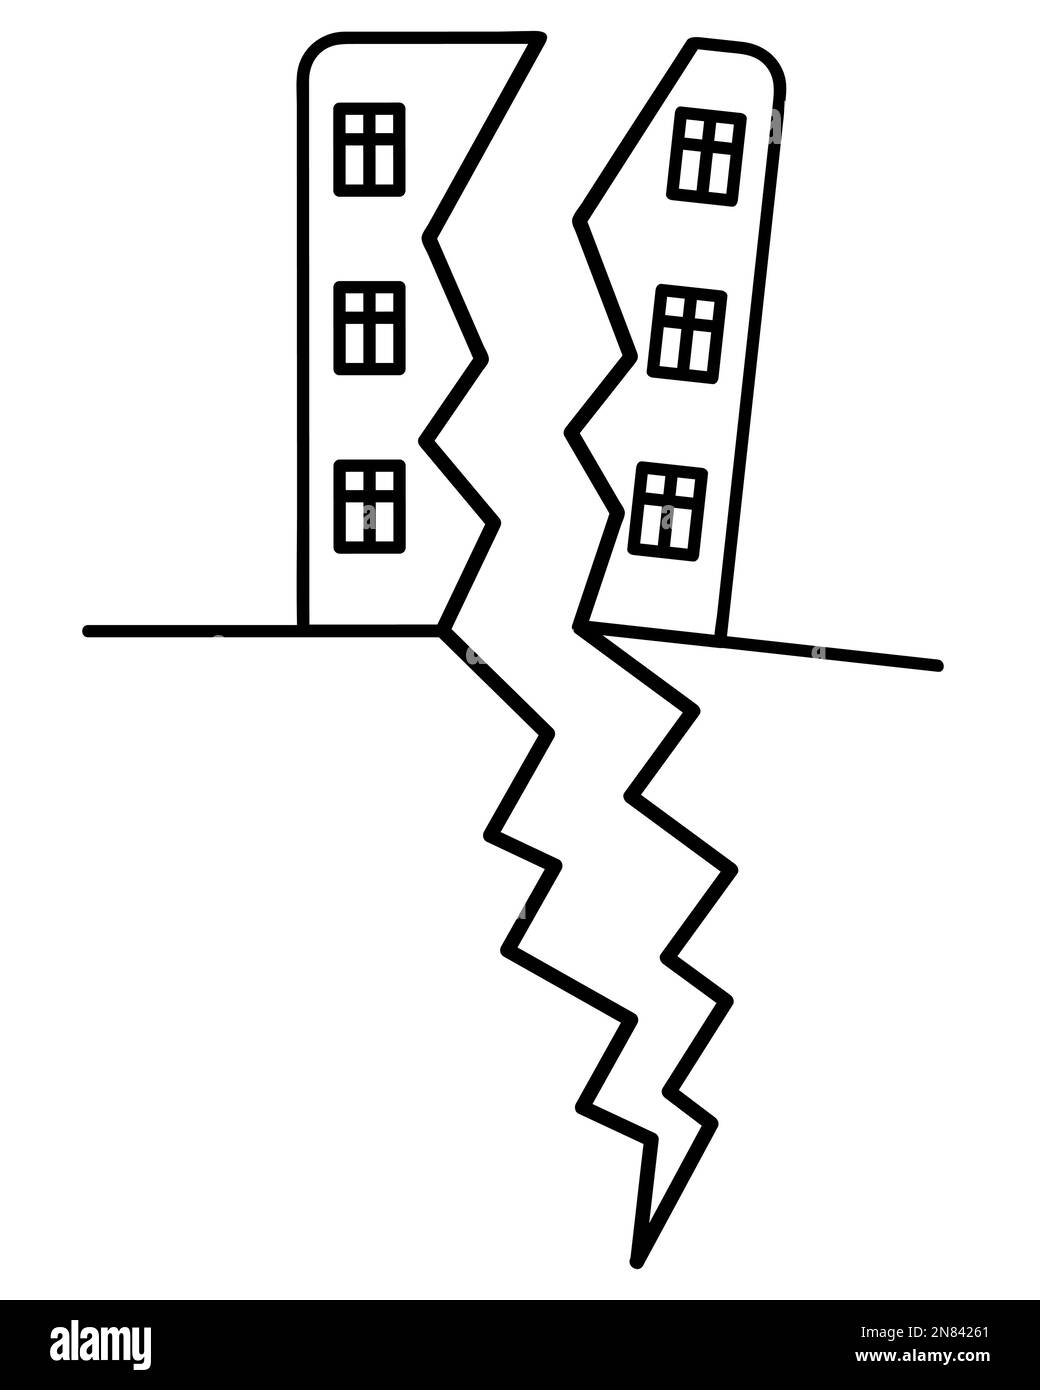 Das Wohngebäude ist in zwei Hälften geteilt. Geteilt durch Erdbeben. Skizzieren. Ein Teil des Gebäudes brach zusammen. Vektor Stock Vektor